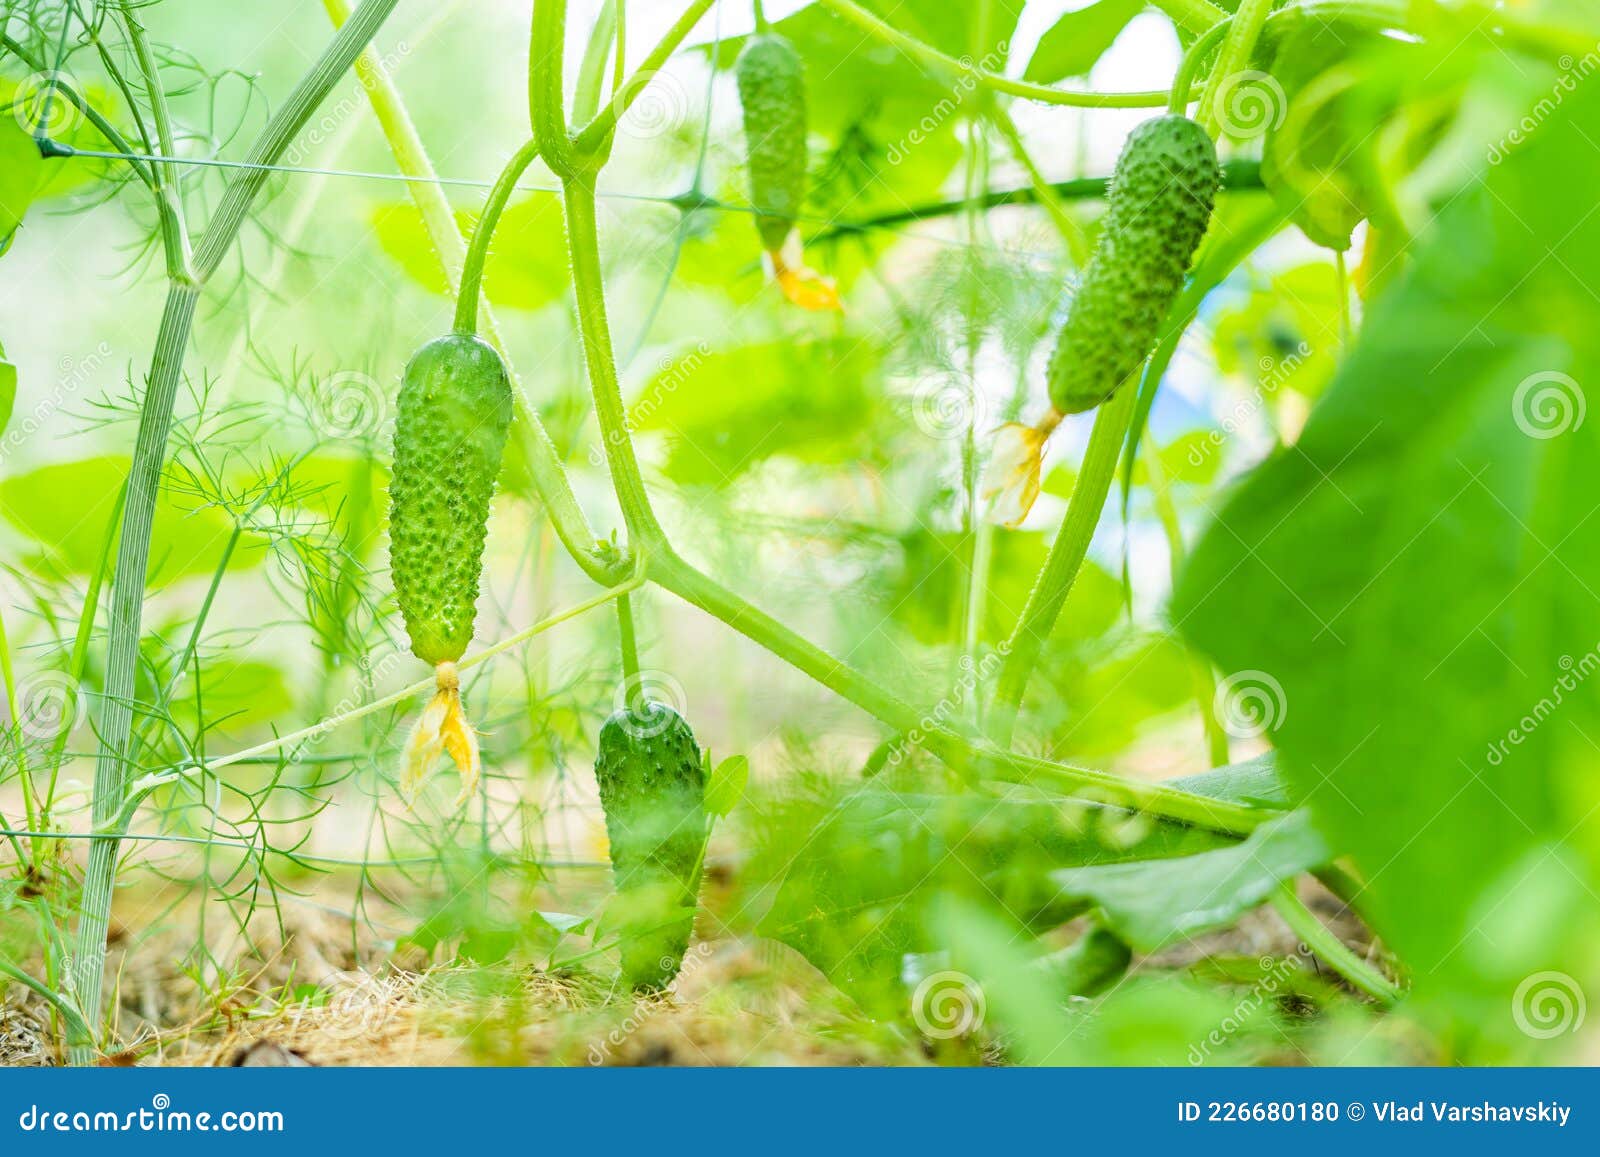 黄瓜秧已经结瓜，从小苗到结果，看看黄瓜是怎样长成的？